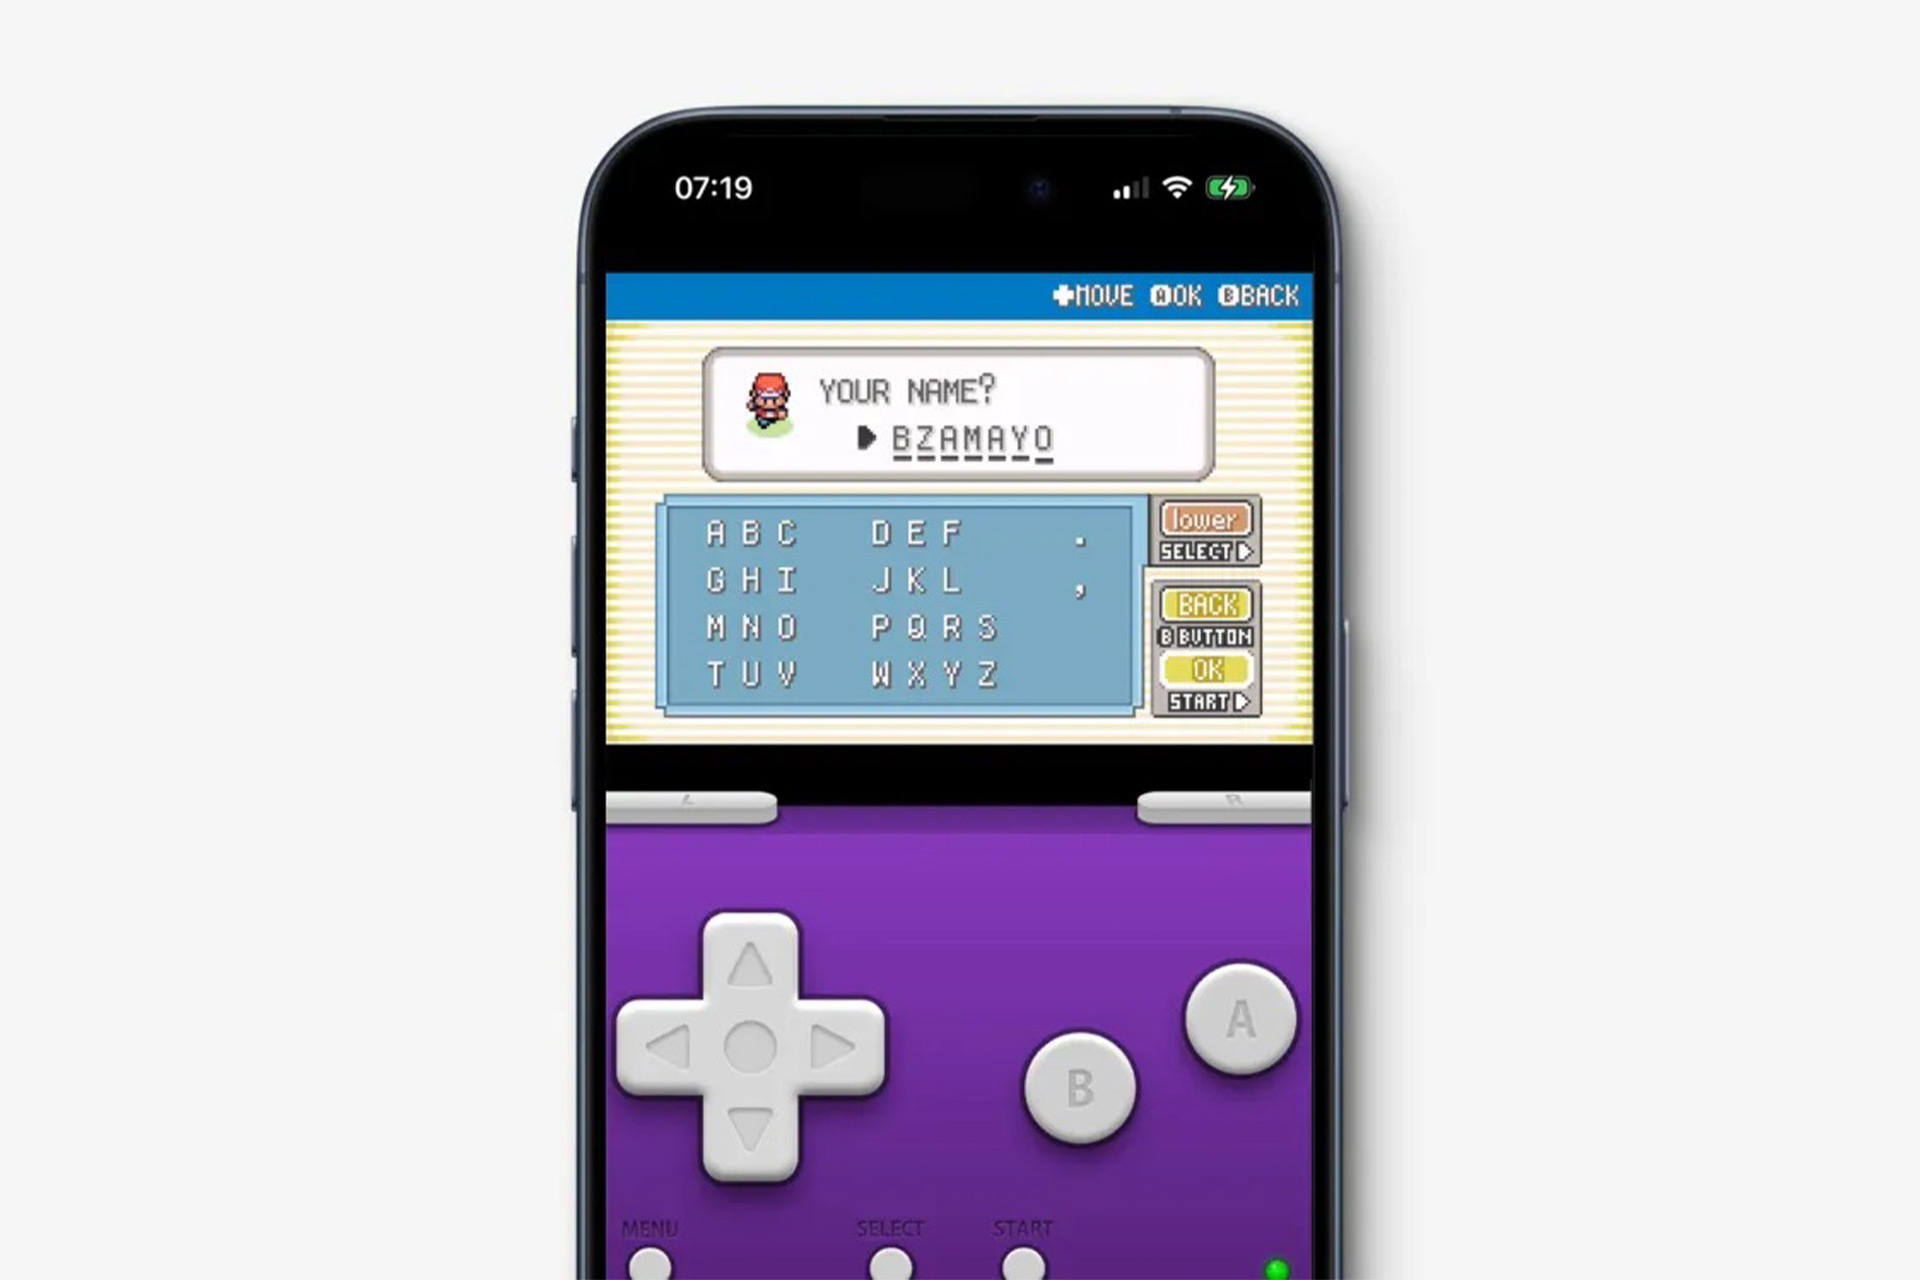 game boy emulator iphone 661baeb6a55162c757fc4f8e